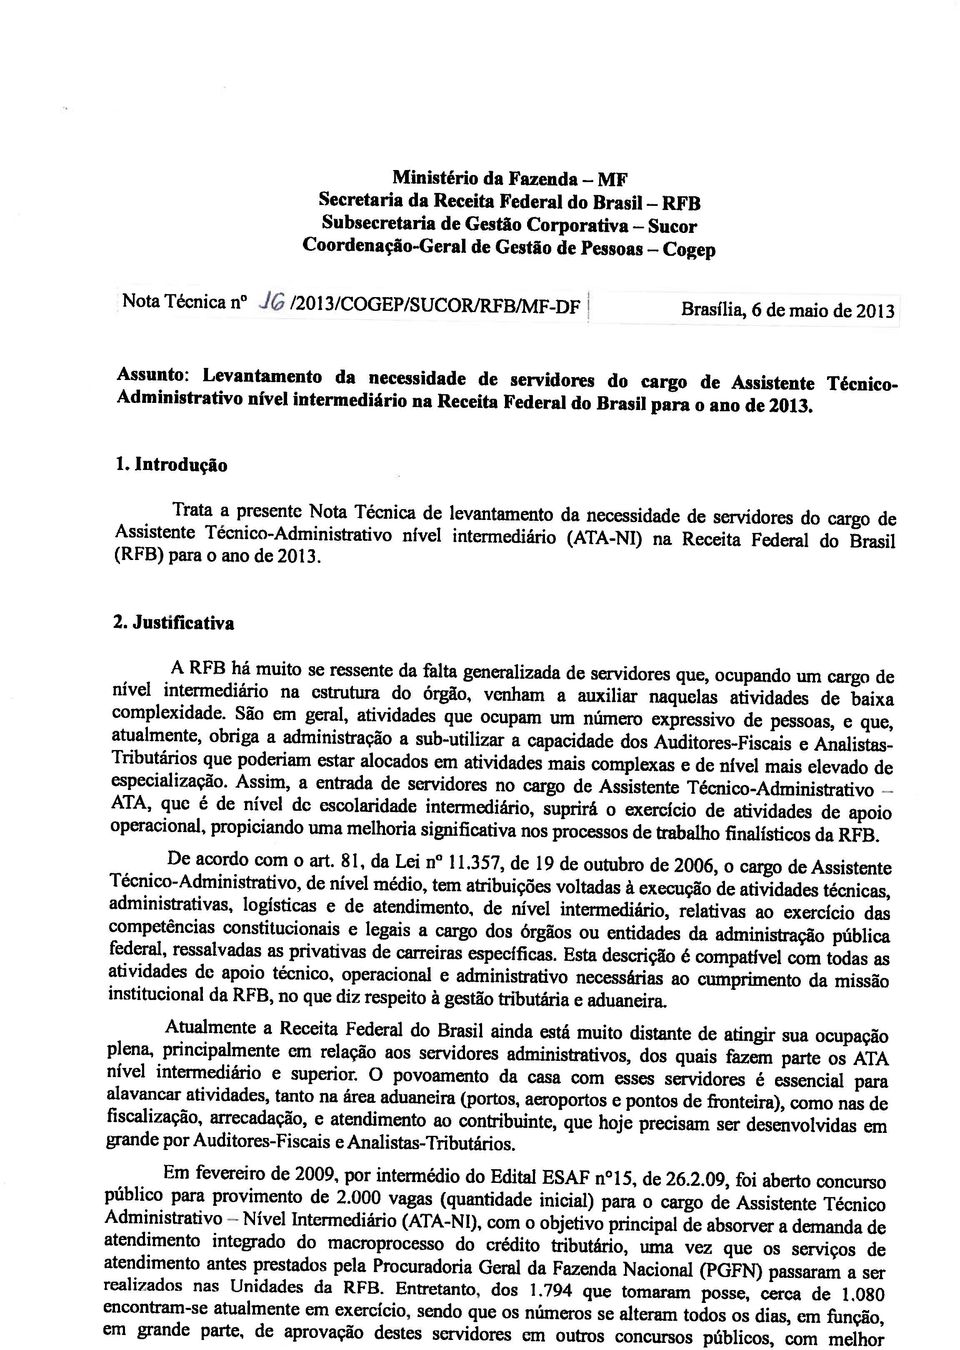 . intrduçã Trata a presente Nta Técnica de levantament da necessidade de servidres d carg de Assistente Técnic-Administrativ nível intermediári (ATA-NI) na Rcceita Federal ci Brasil (RFB) para an dc